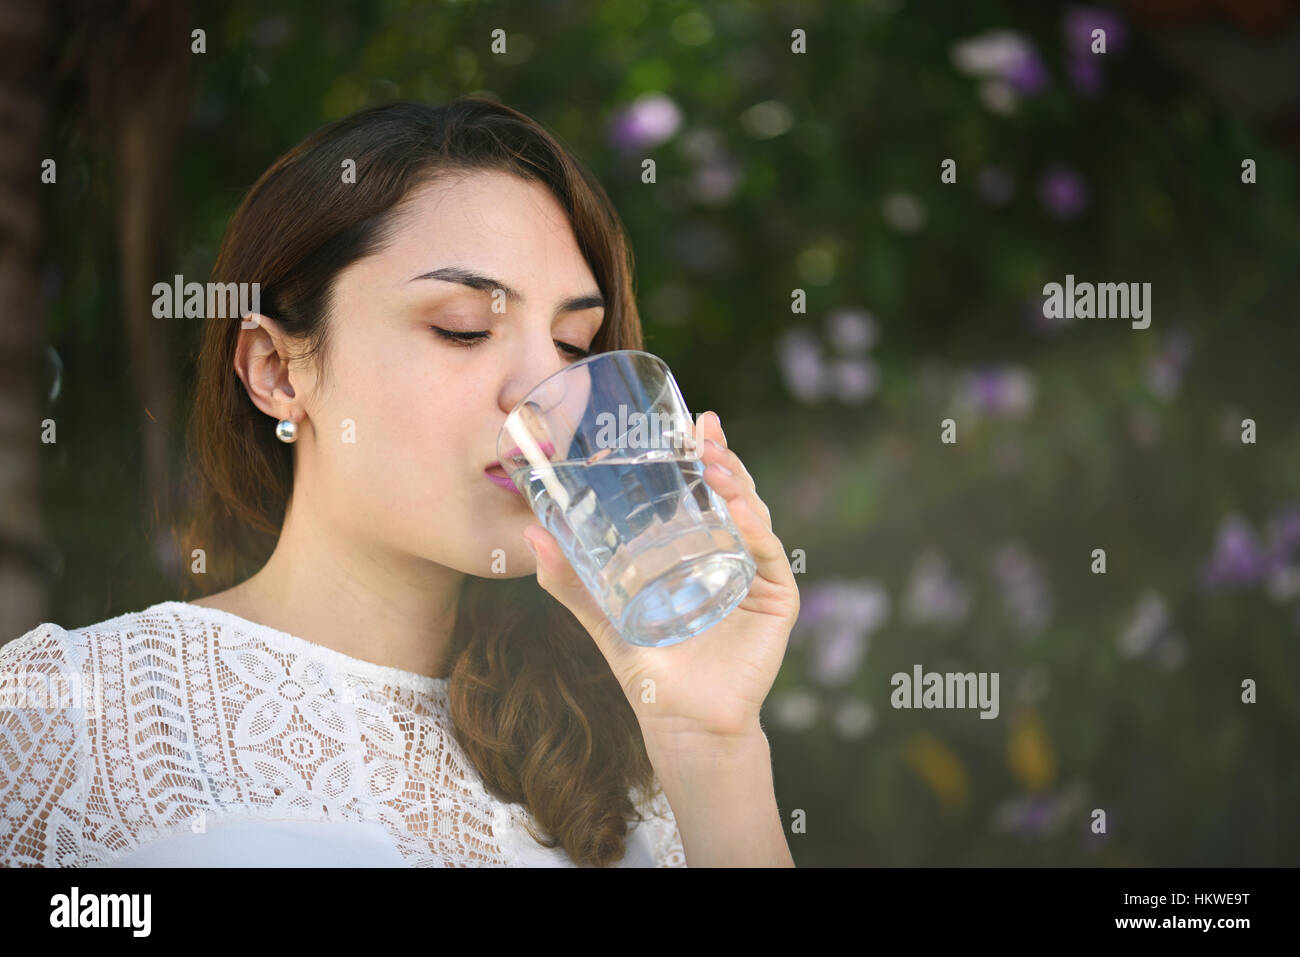 Hispanic Frau Trinkwasser im Licht der Sonne in grünen park Stockfoto